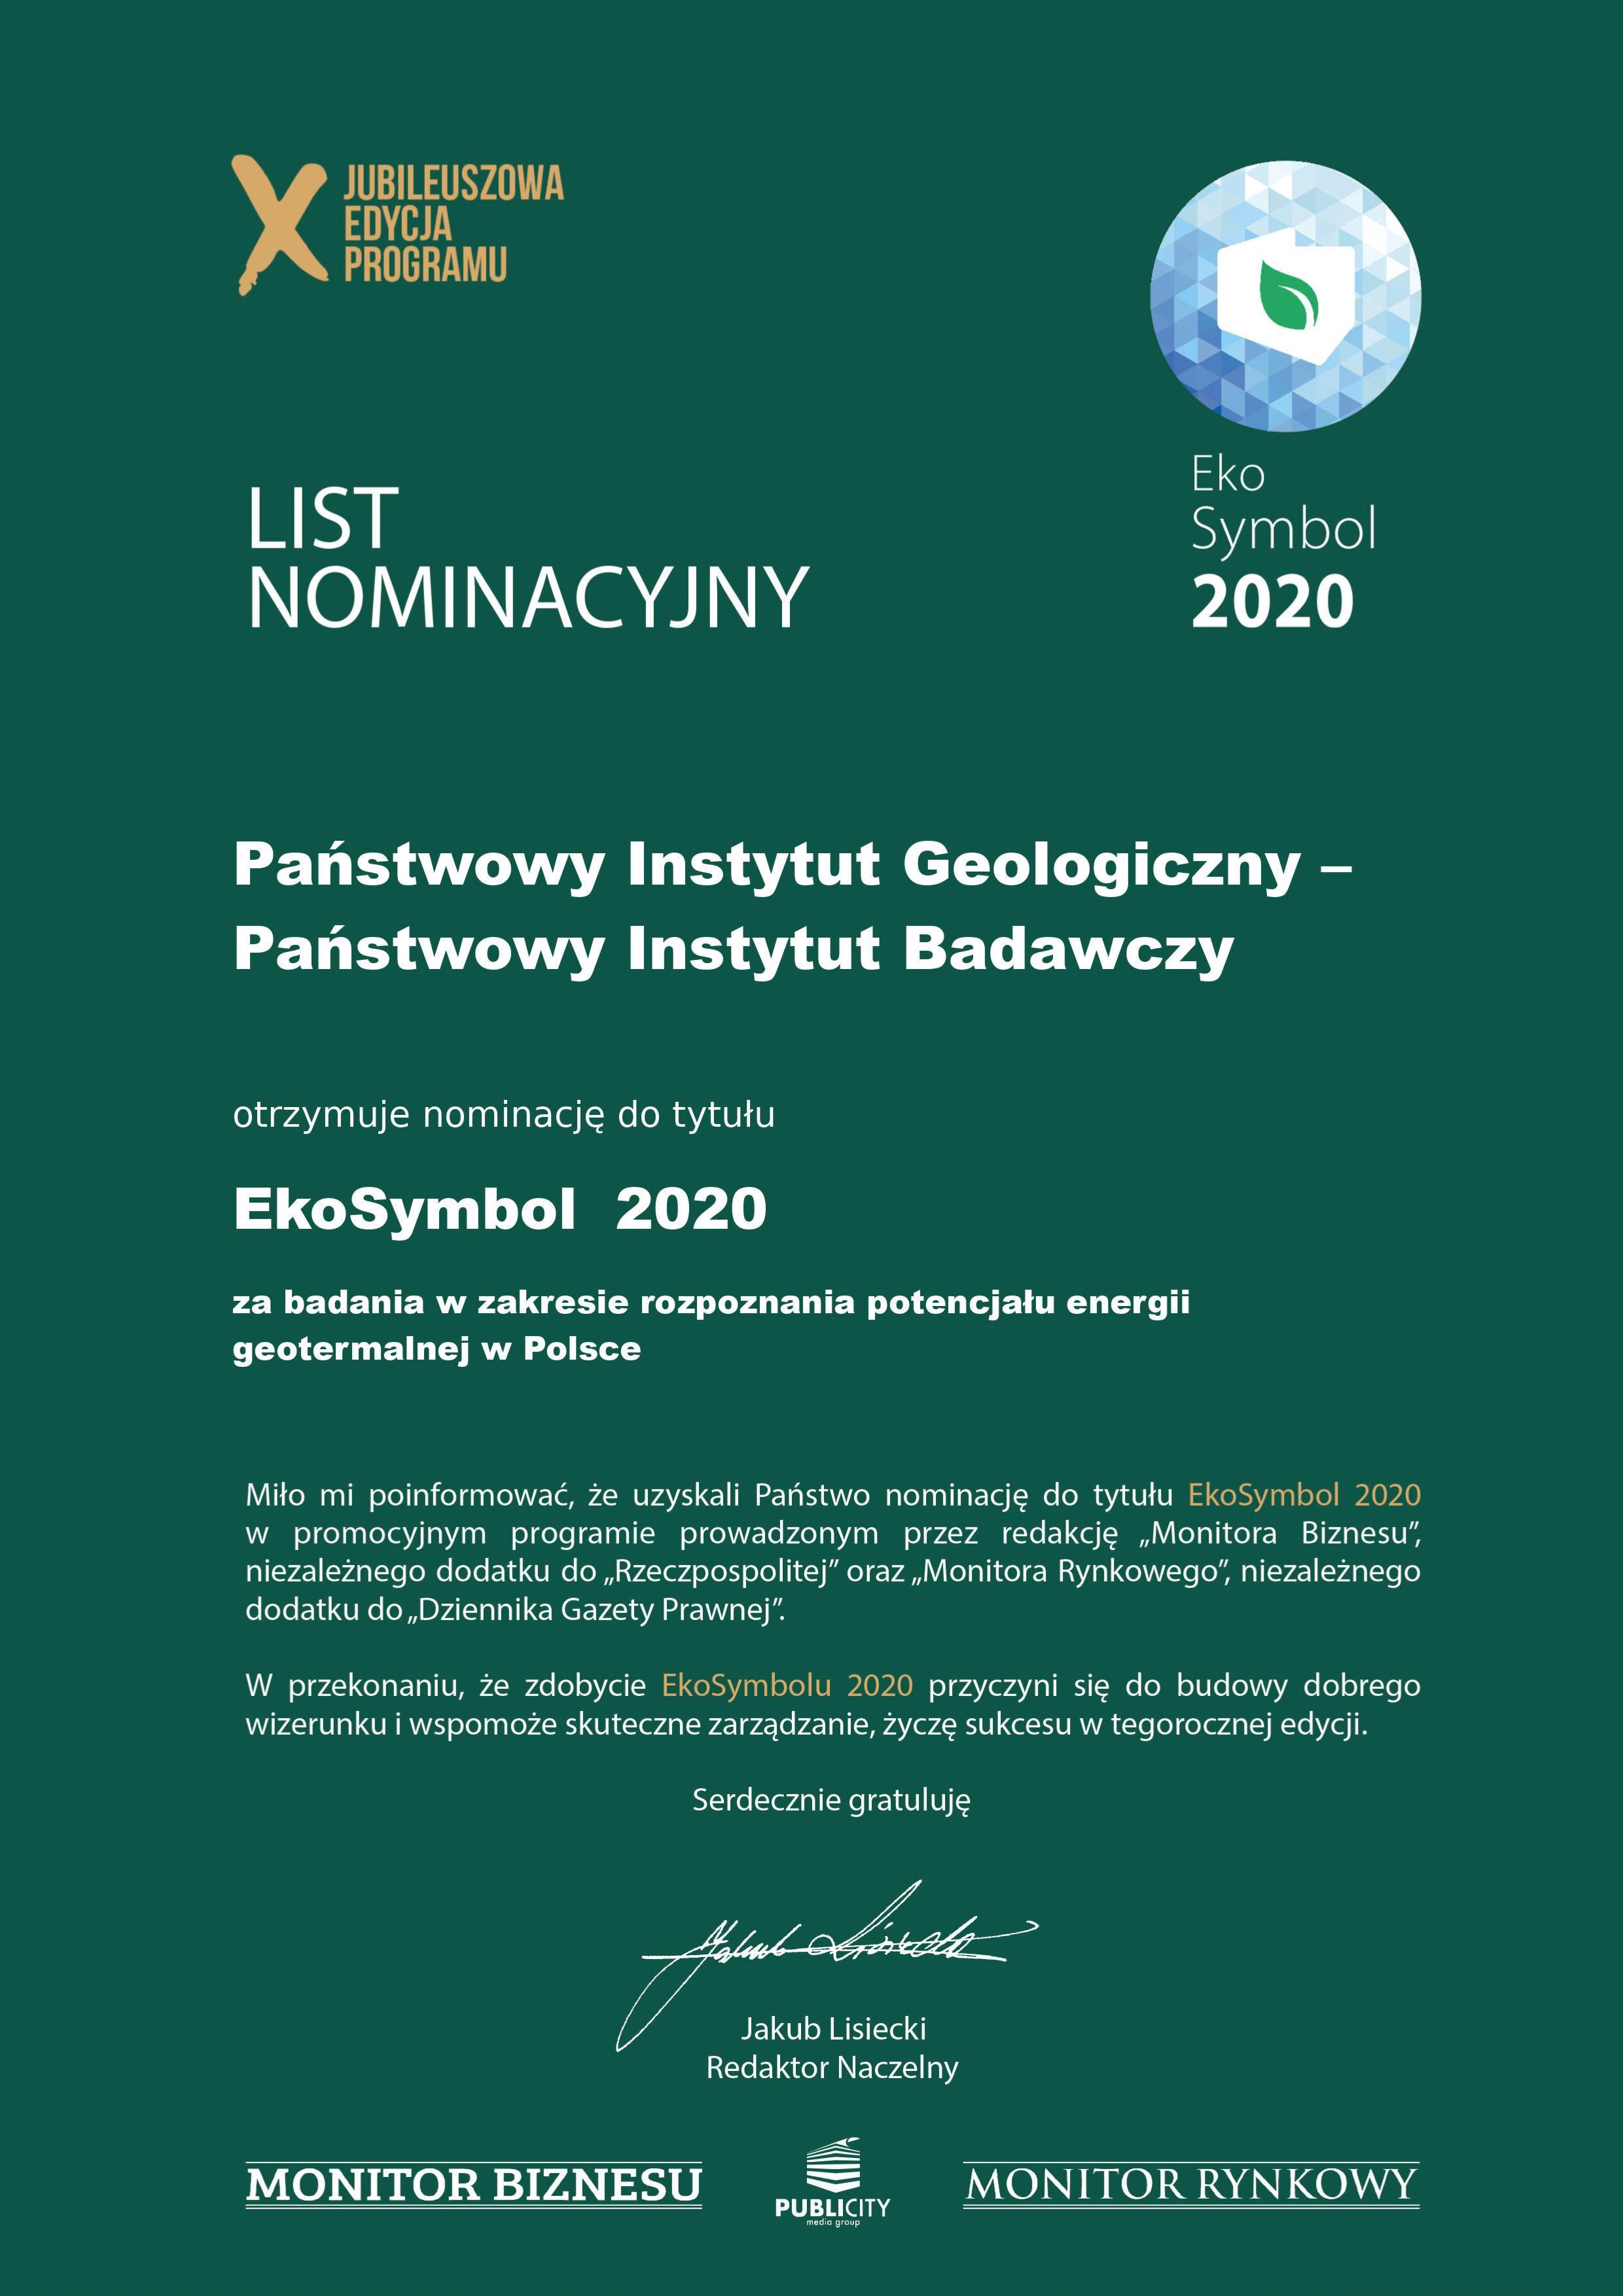 List nominacyjny dla PIG-PIB za badania w zakresie rozpoznania potencjału energii geotermalnej w Polsce